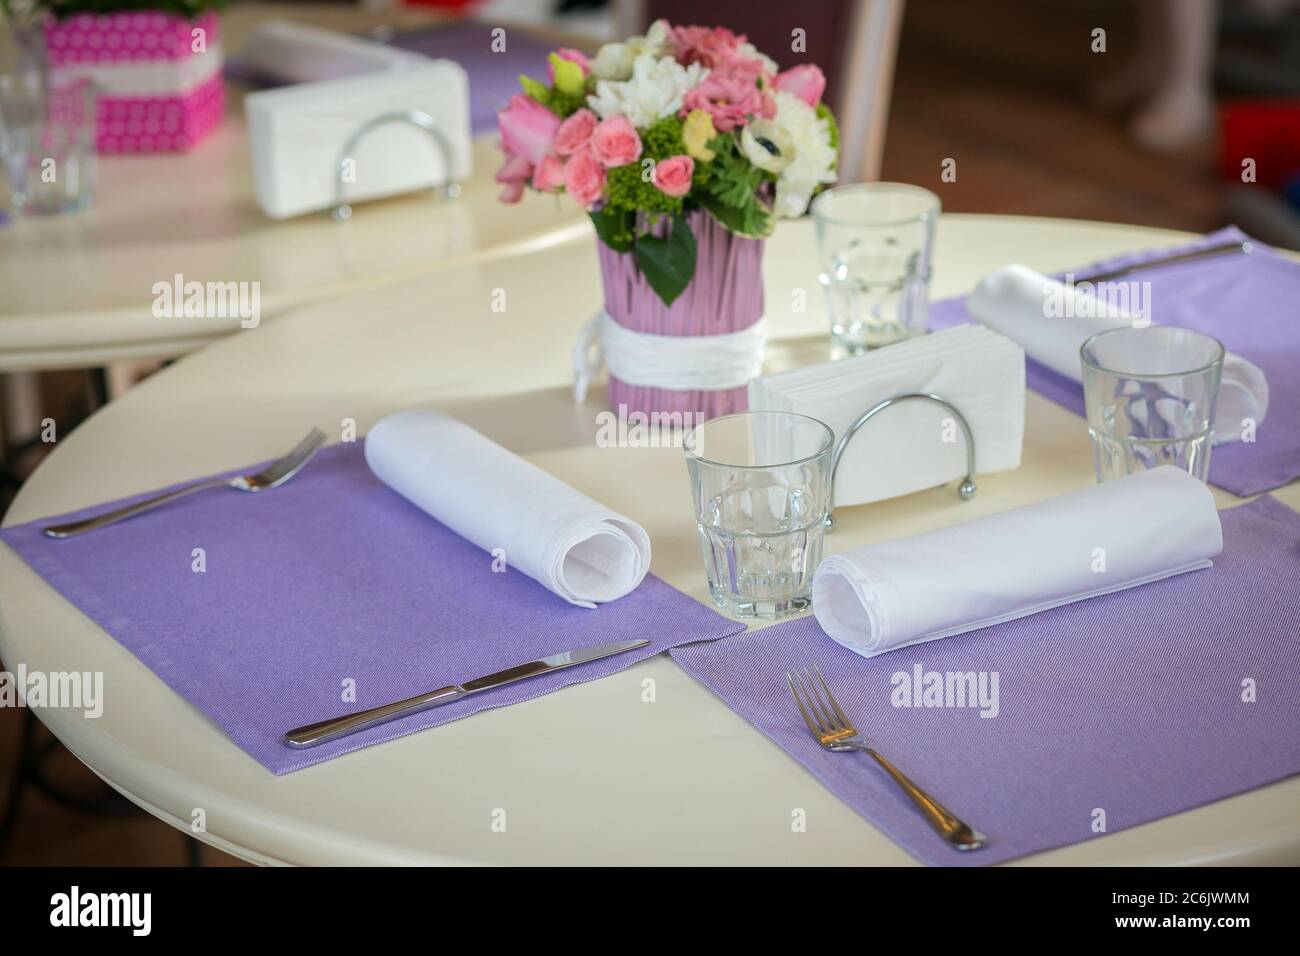 Decorazioni per celebrazioni chiare su un tavolo rotondo con bouquet di rose in un caffè aspetta i suoi ospiti. Concetto romantico. Concetto di evento o festa Foto Stock